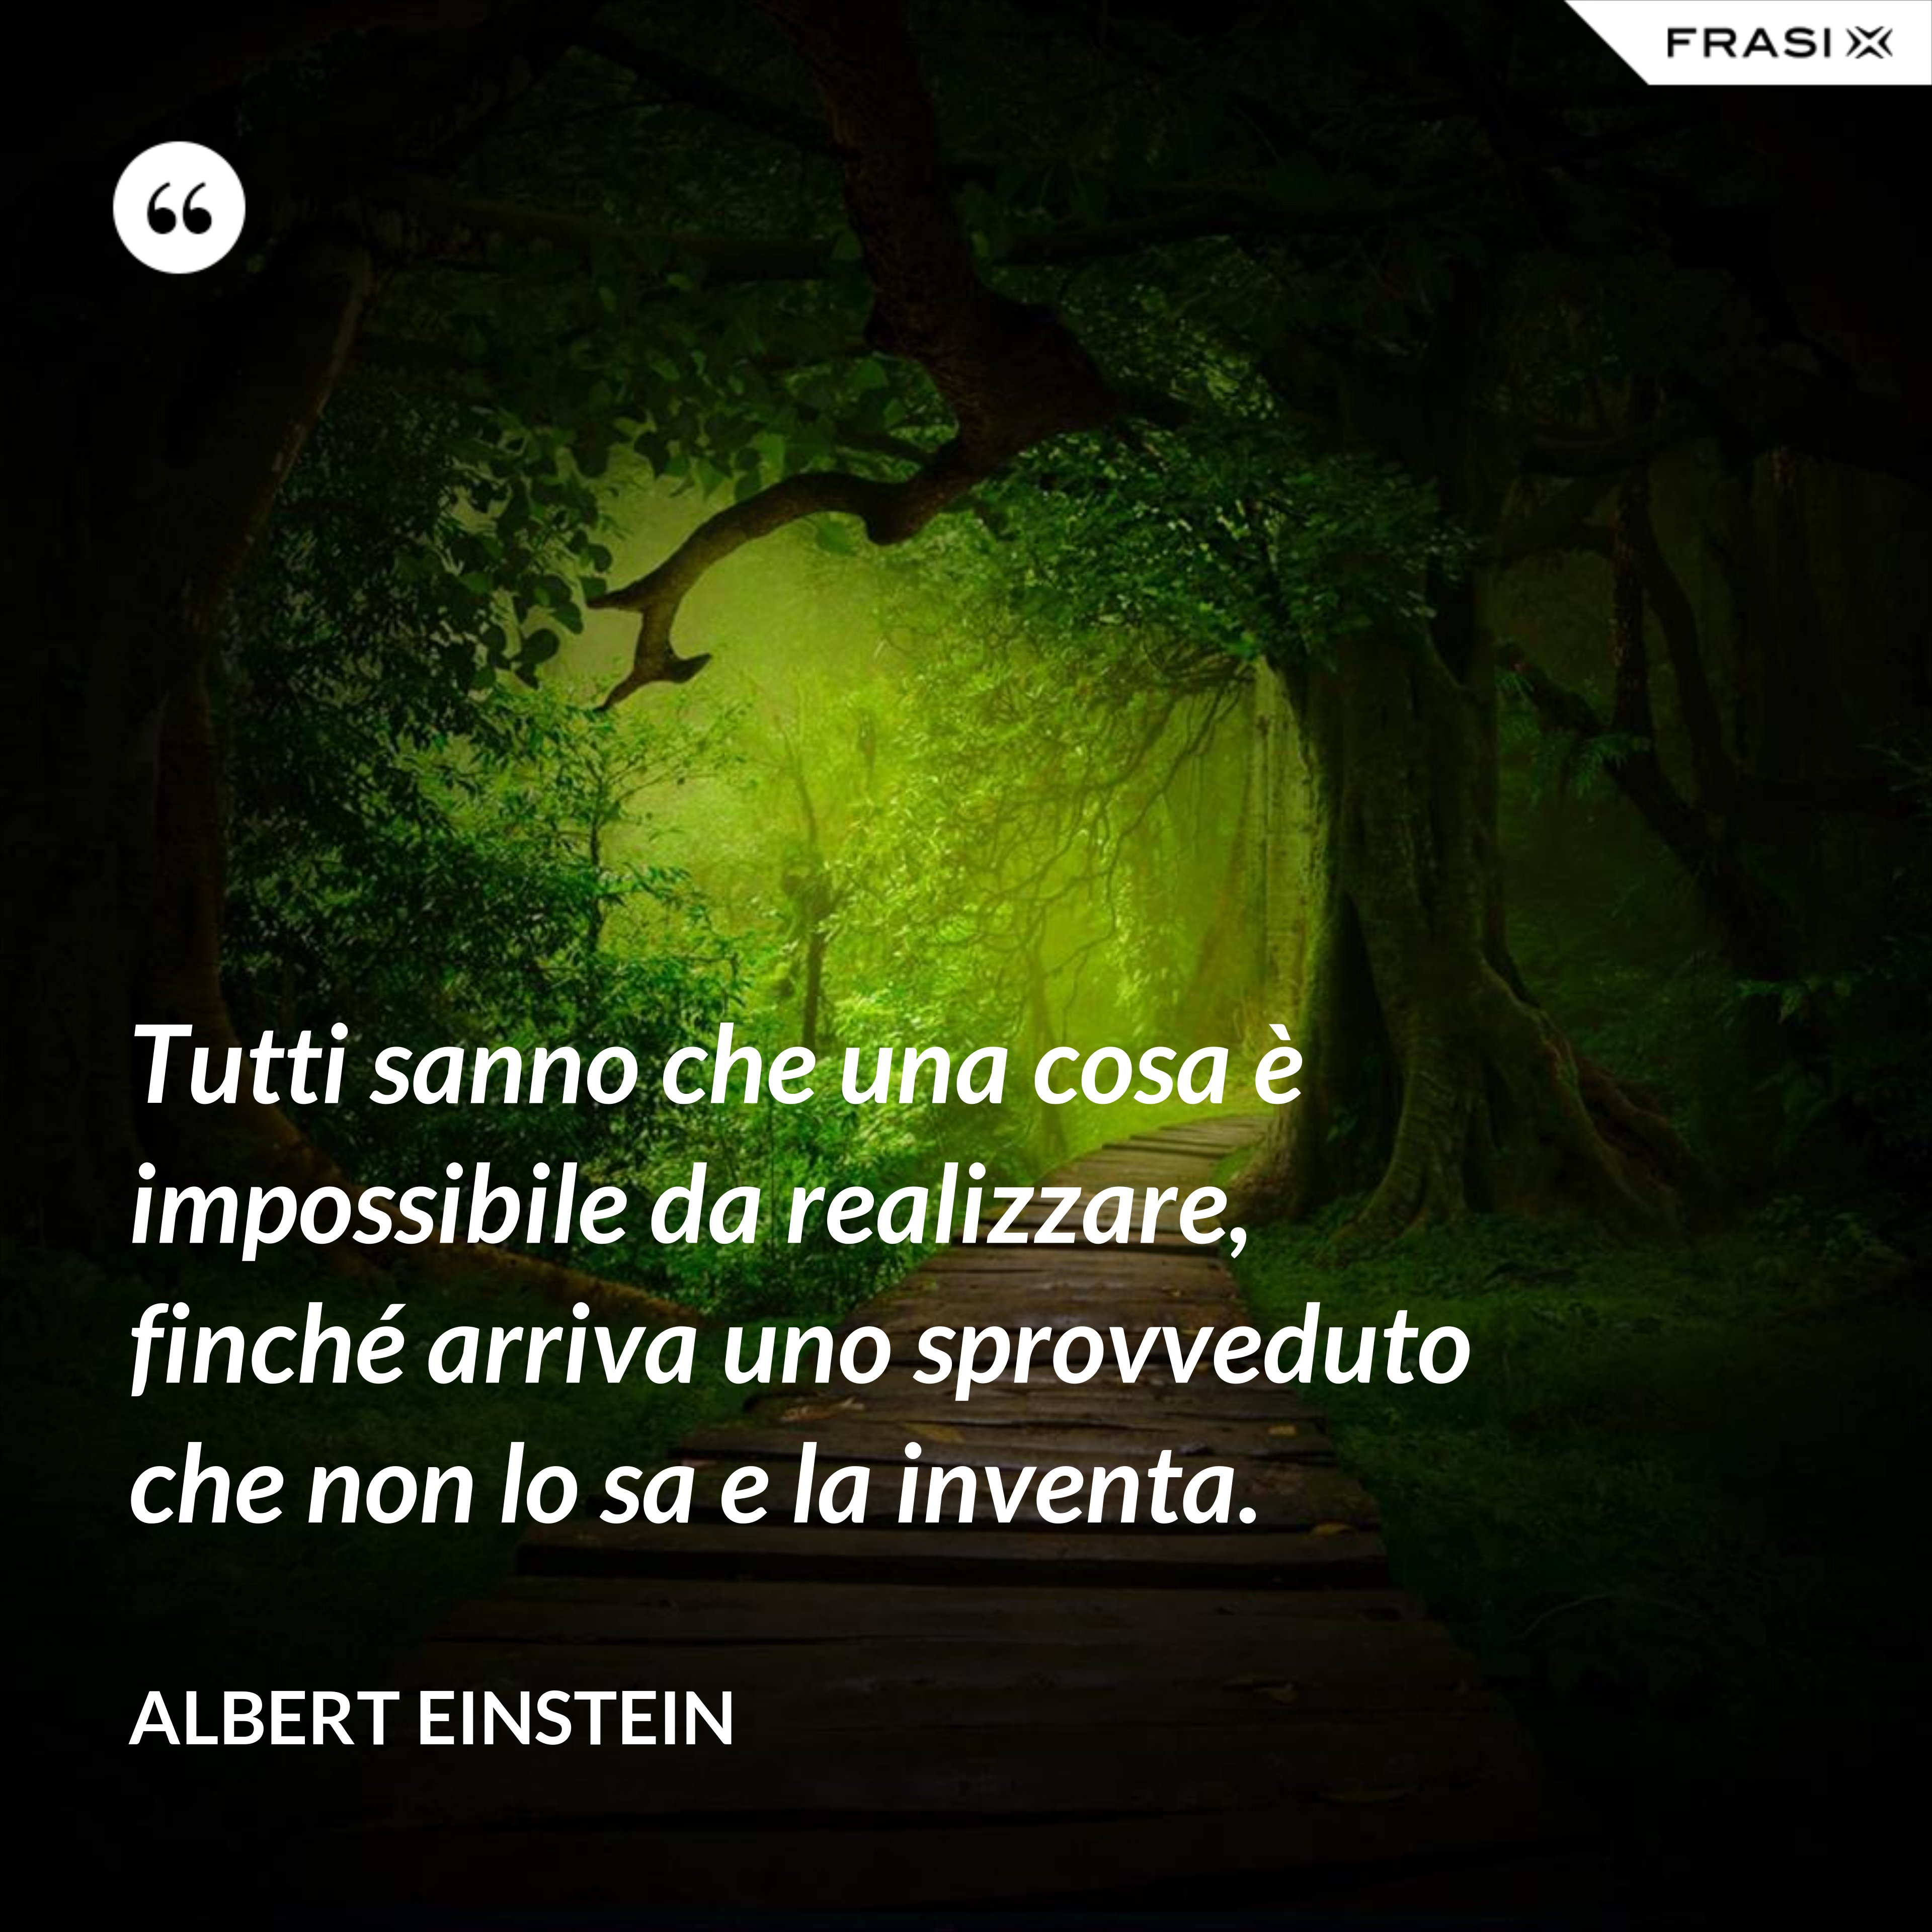 Tutti sanno che una cosa è impossibile da realizzare, finché arriva uno sprovveduto che non lo sa e la inventa. - Albert Einstein